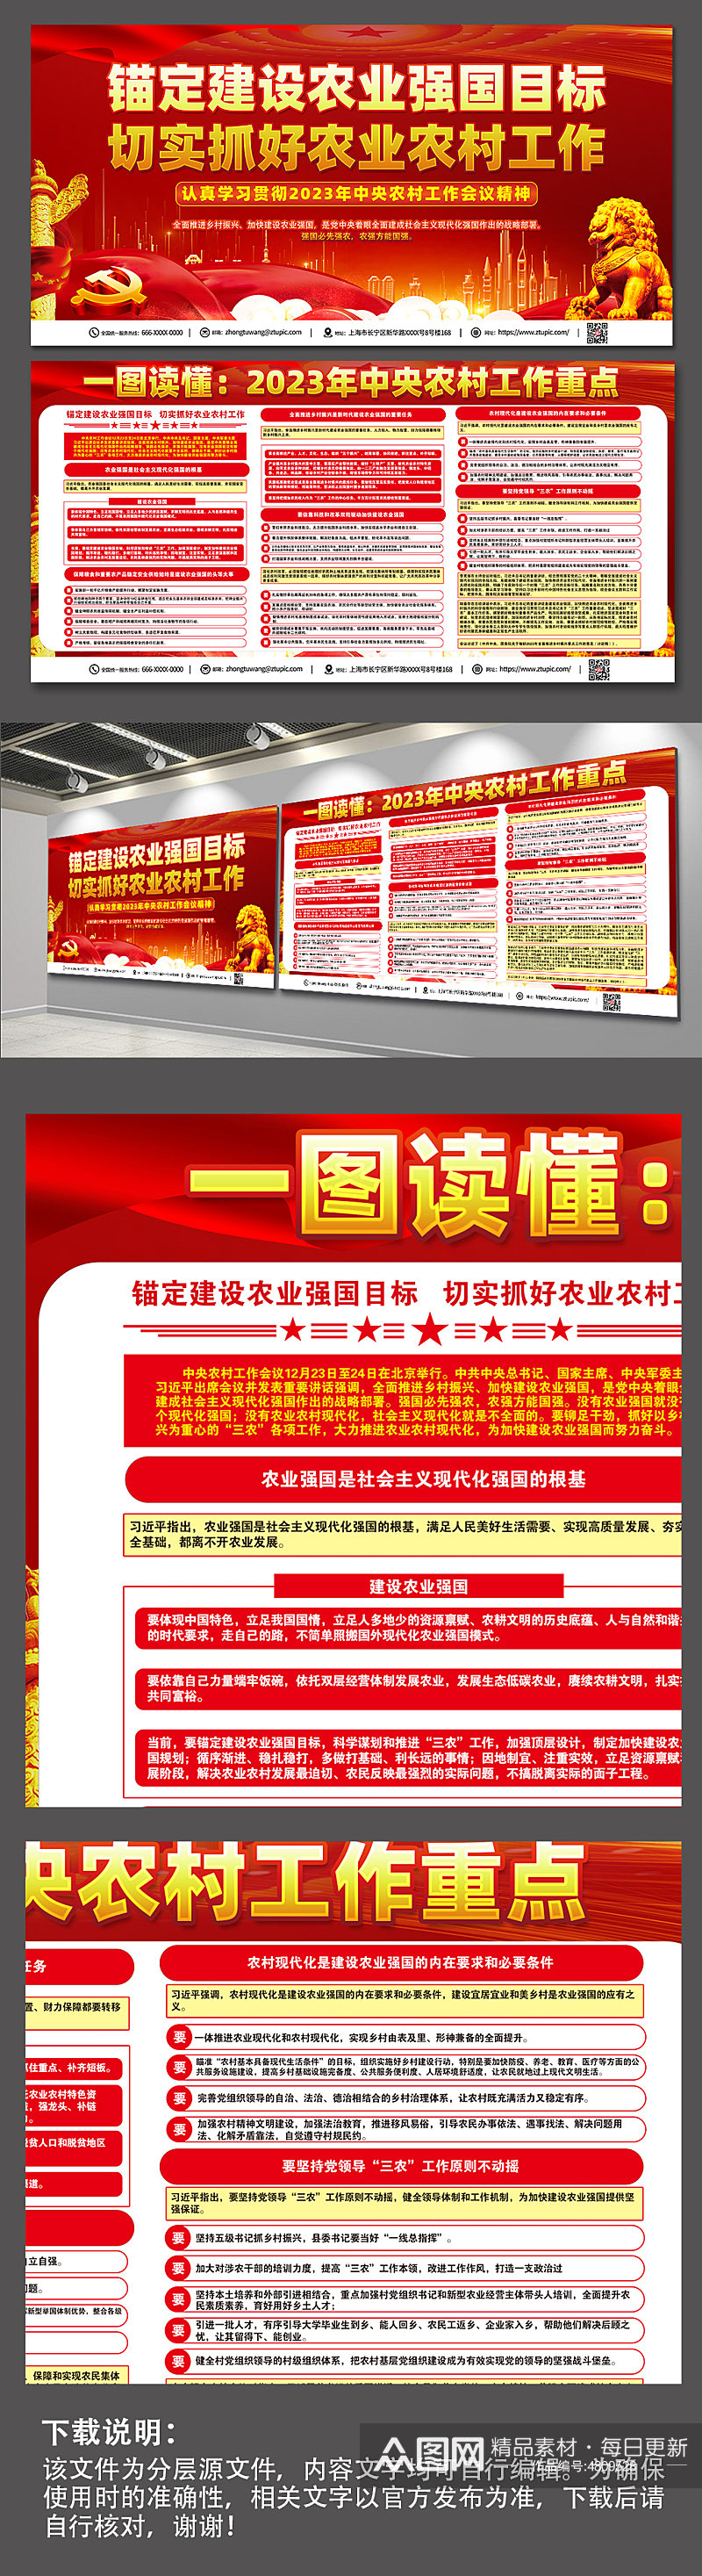 红色喜庆农村工作会议内容宣传党建展板素材